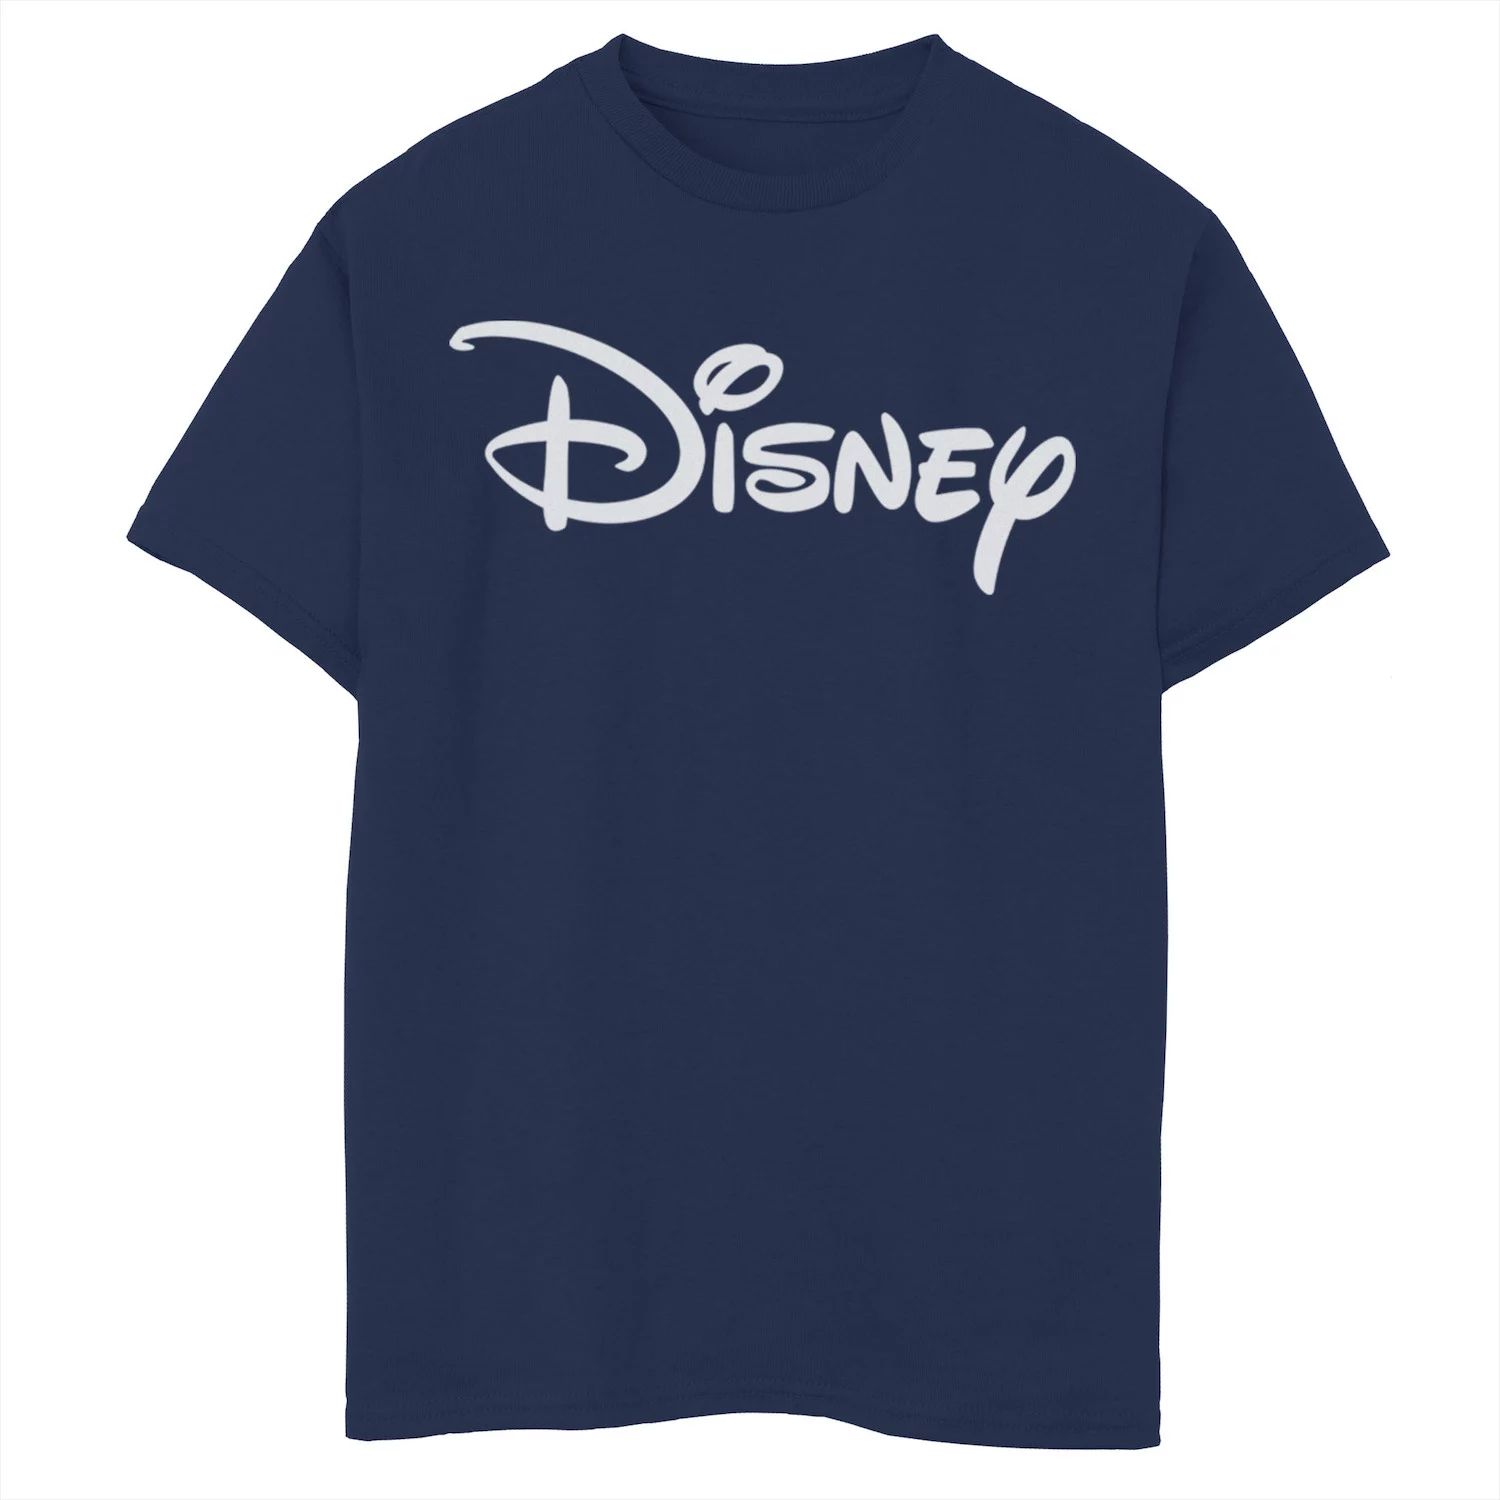 Бледно-желтая футболка с графическим логотипом Disney для мальчиков 8–20 лет Disney базовая футболка disney с логотипом disney для мальчиков 8–20 лет и графическим рисунком disney